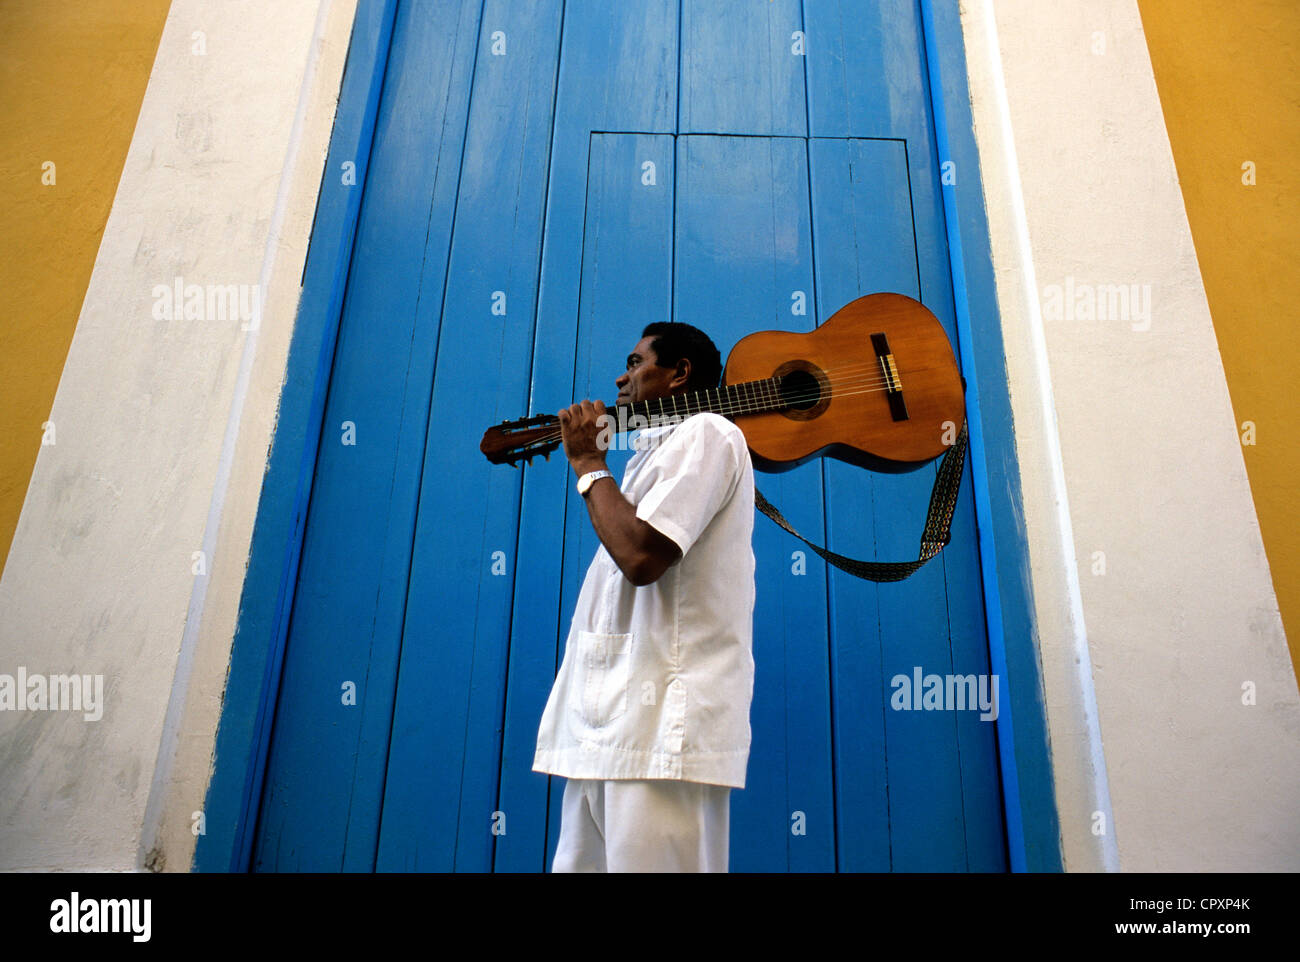 Cuba, La Habana, La Habana Vieja Distrito listados como Patrimonio Mundial por la UNESCO, músico llevando una guitarra en frente de la fachada de color Foto de stock